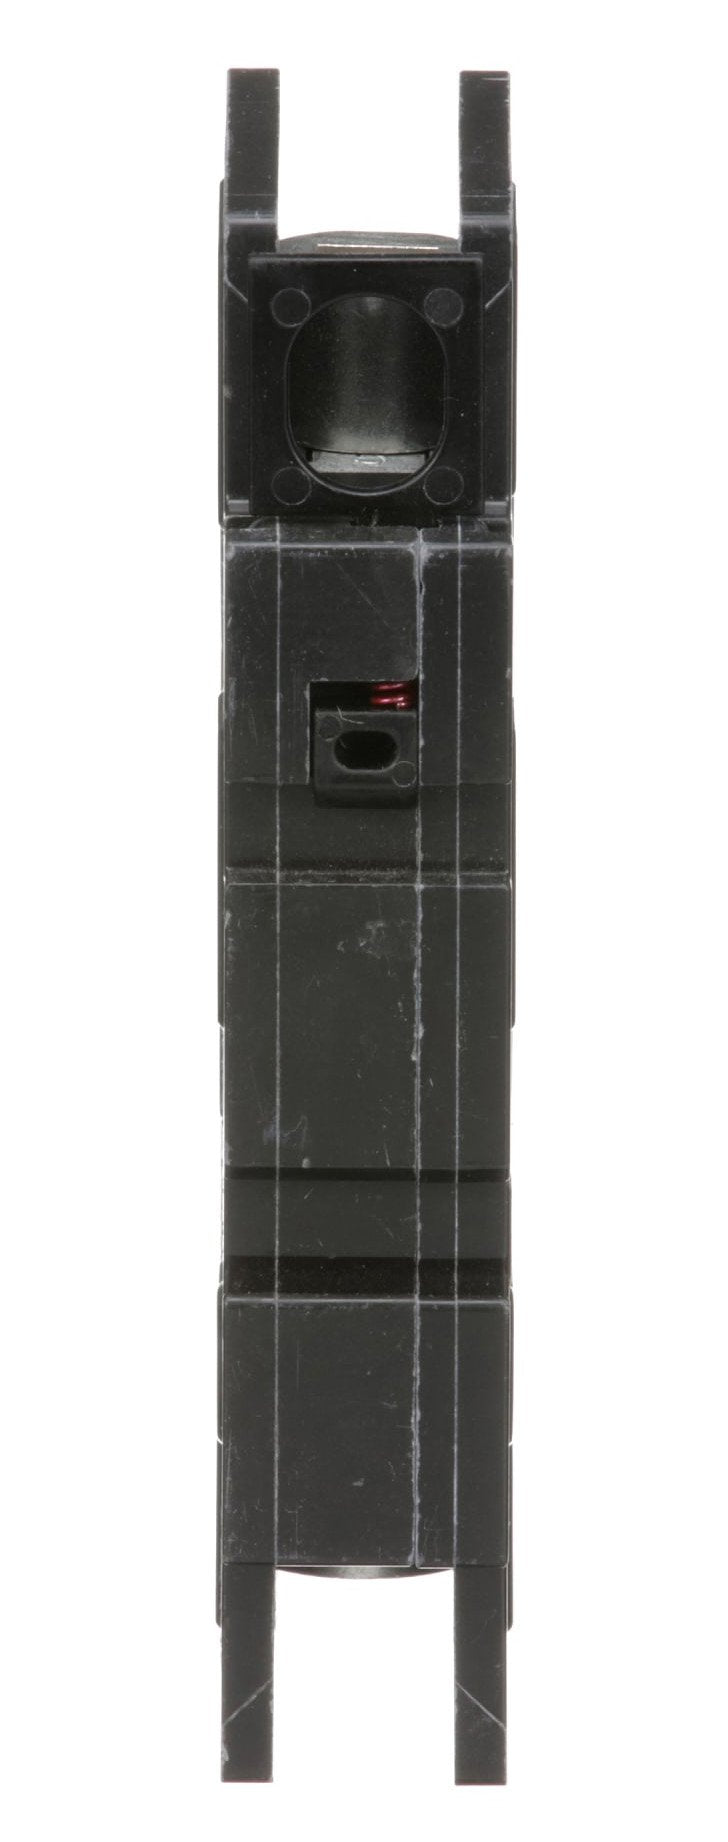 QOU135 - Square D 35 Amp 1 Pole 120 Volt Bolt-On Molded Case Circuit Breaker